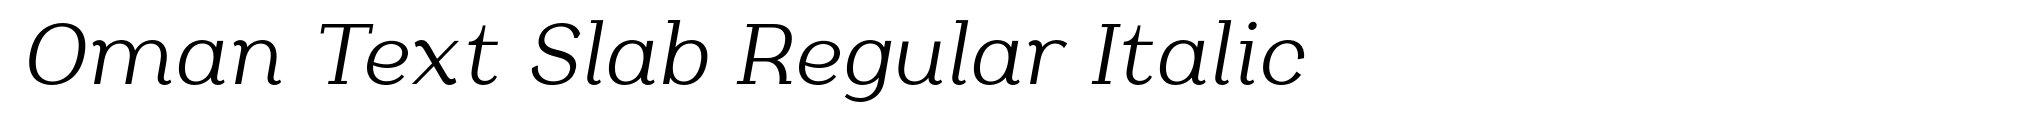 Oman Text Slab Regular Italic image